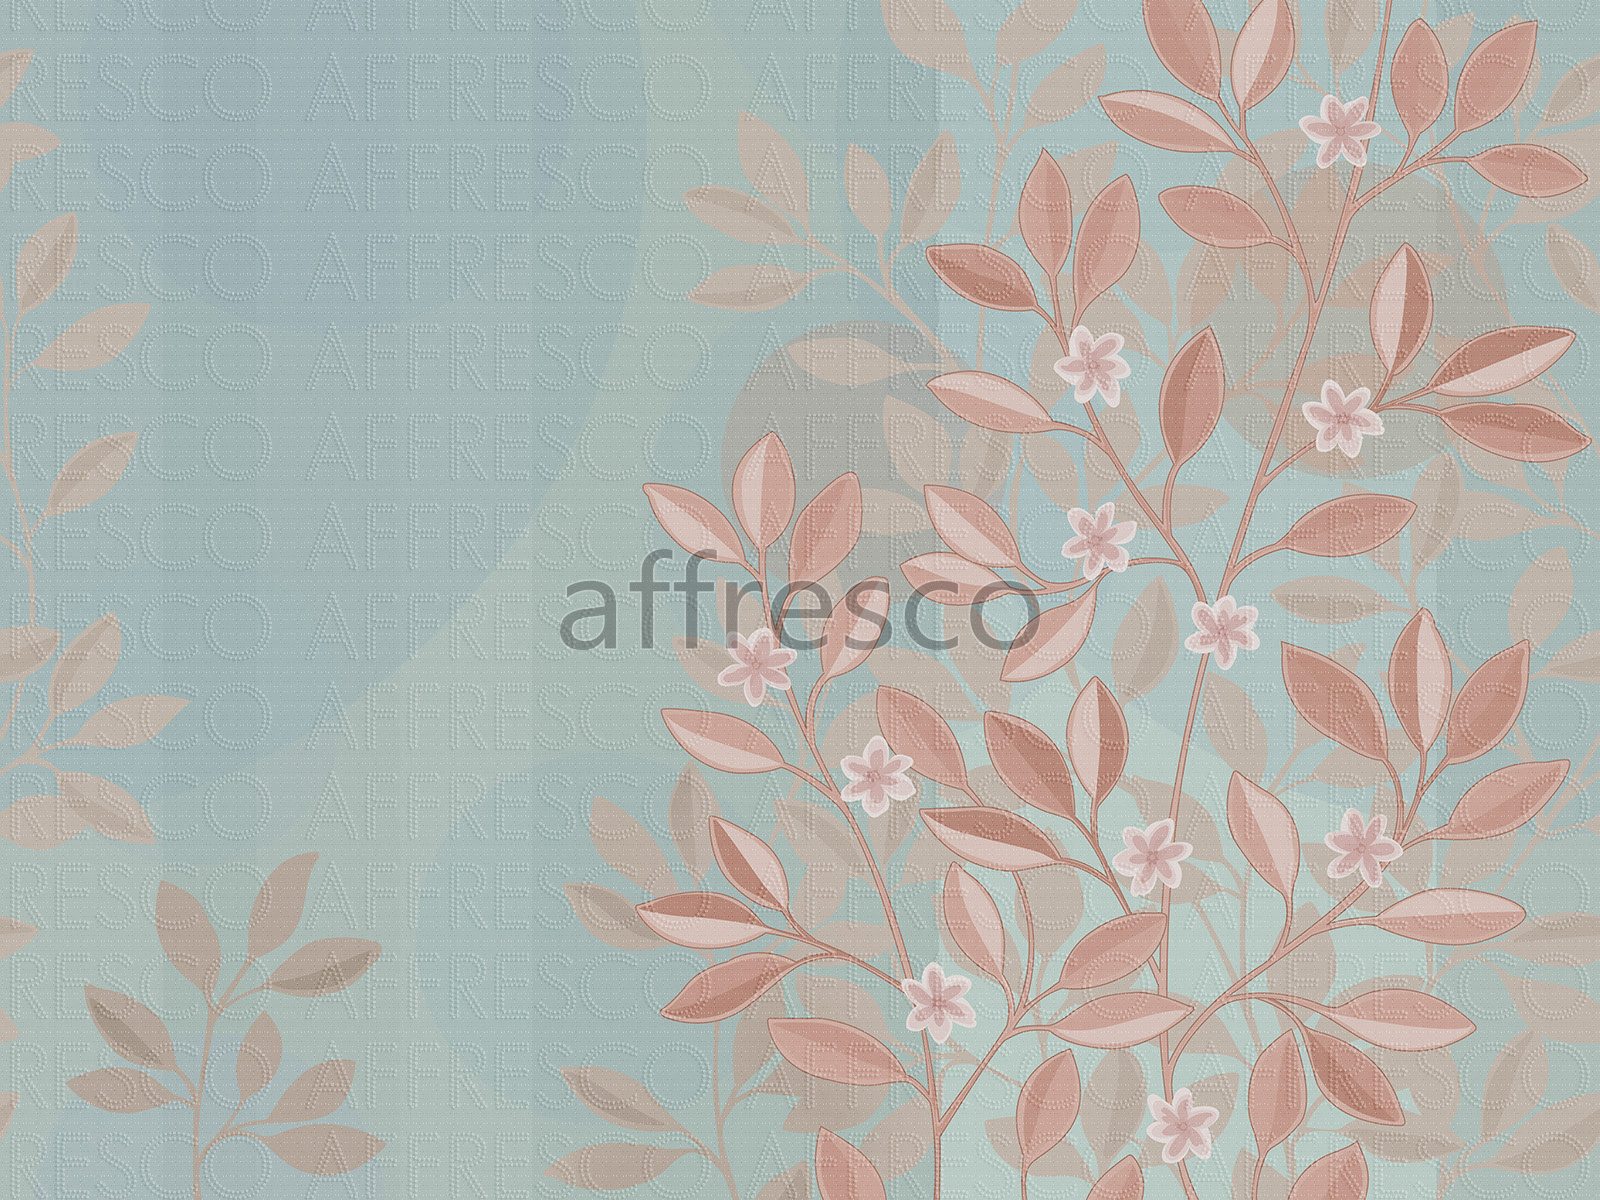 AF2196-COL1 | Fantasy | Affresco Factory